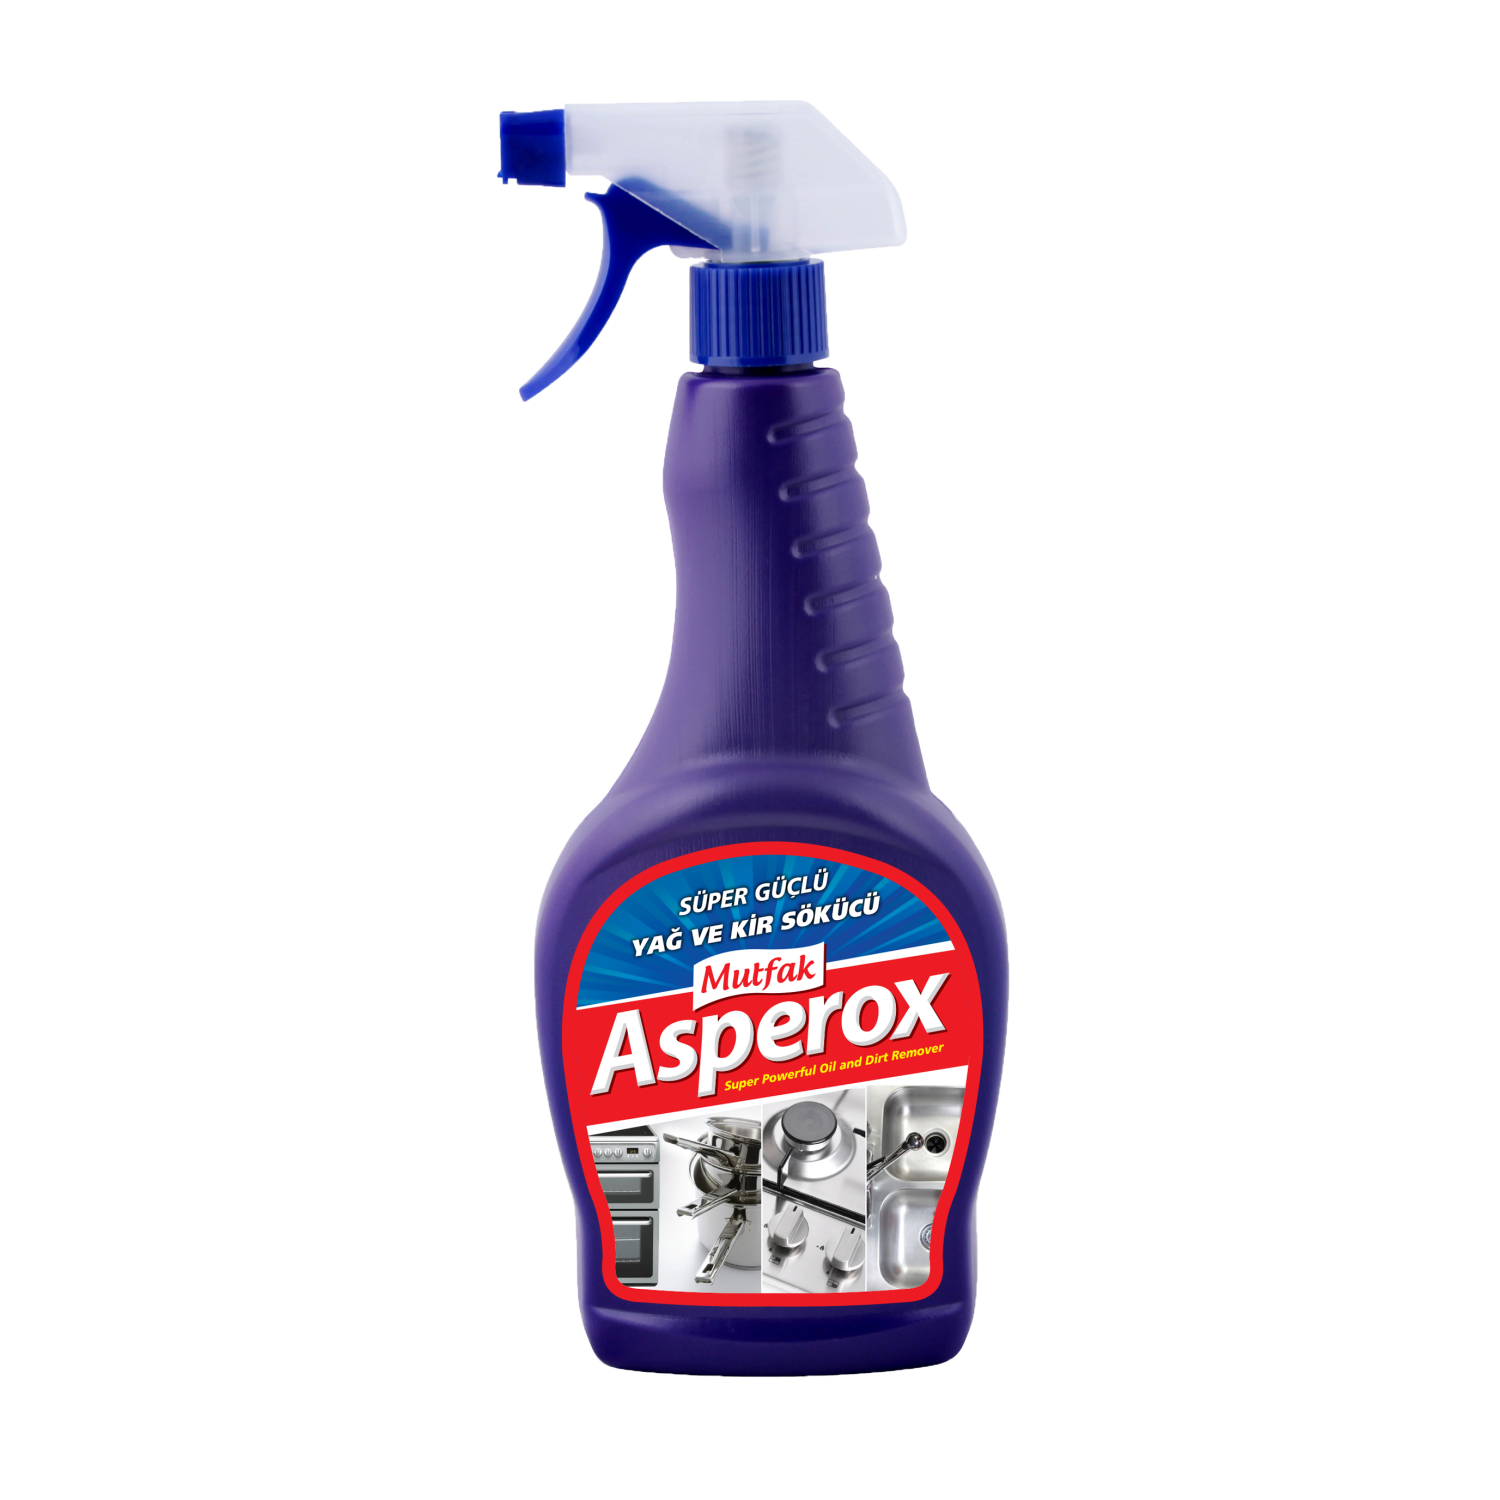 ASPEROX очиститель для кухни 750 ml